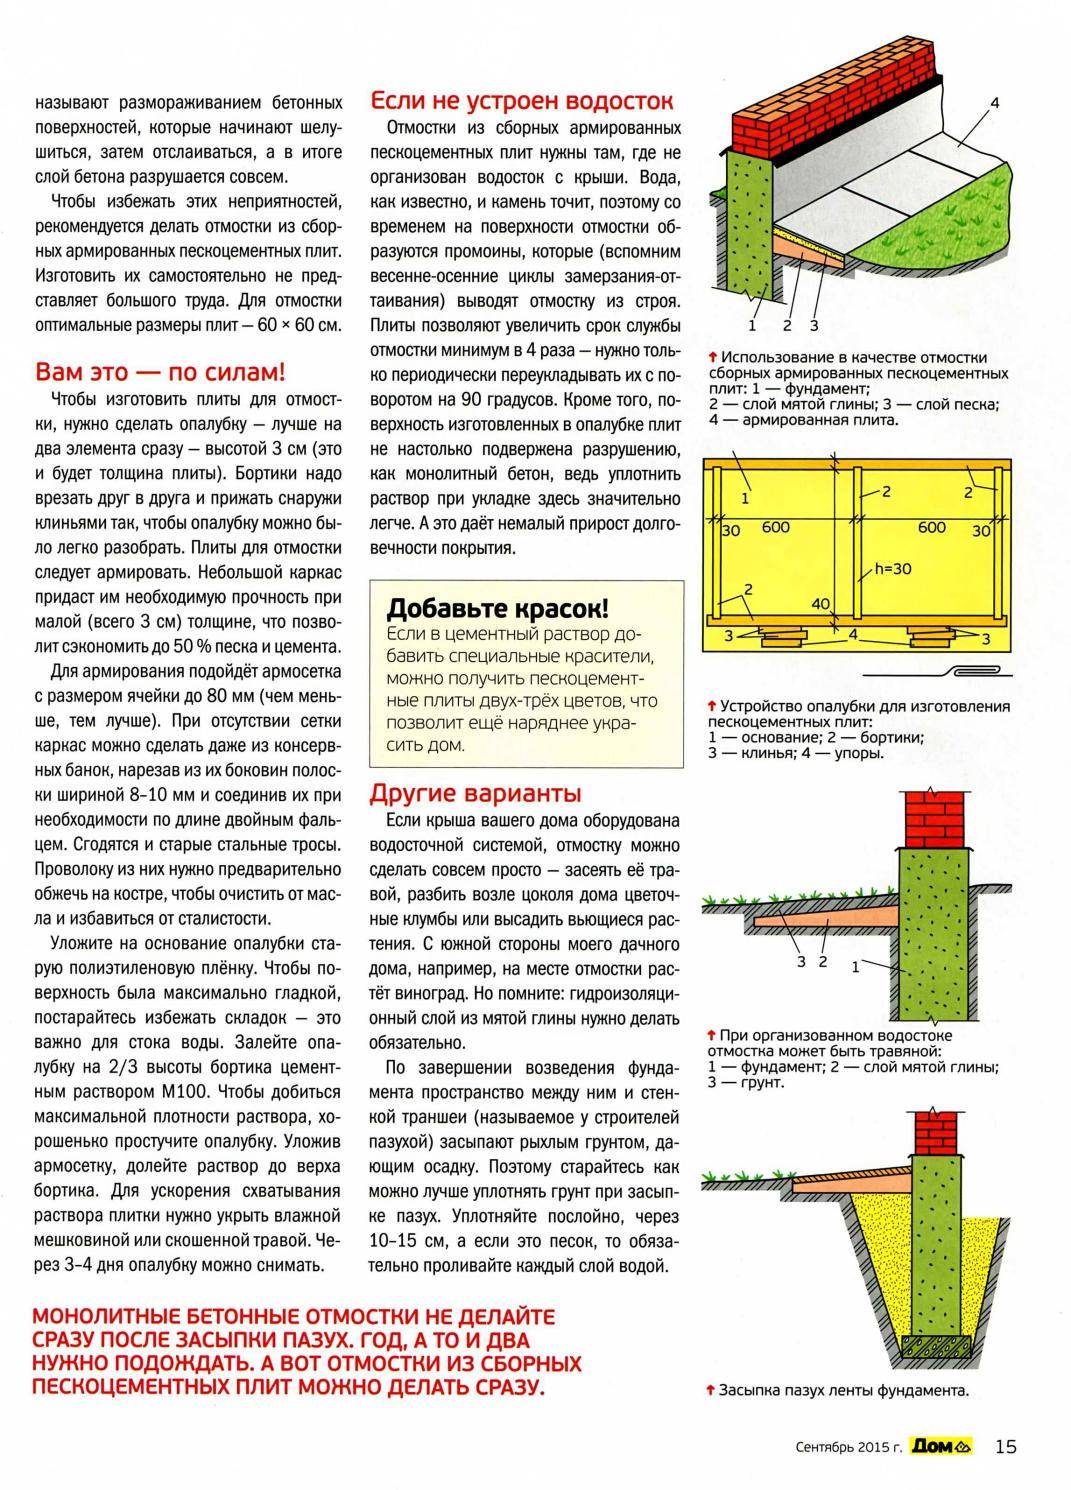 Пропорции бетона для отмостки: расчет, особенности, состав и рекомендации